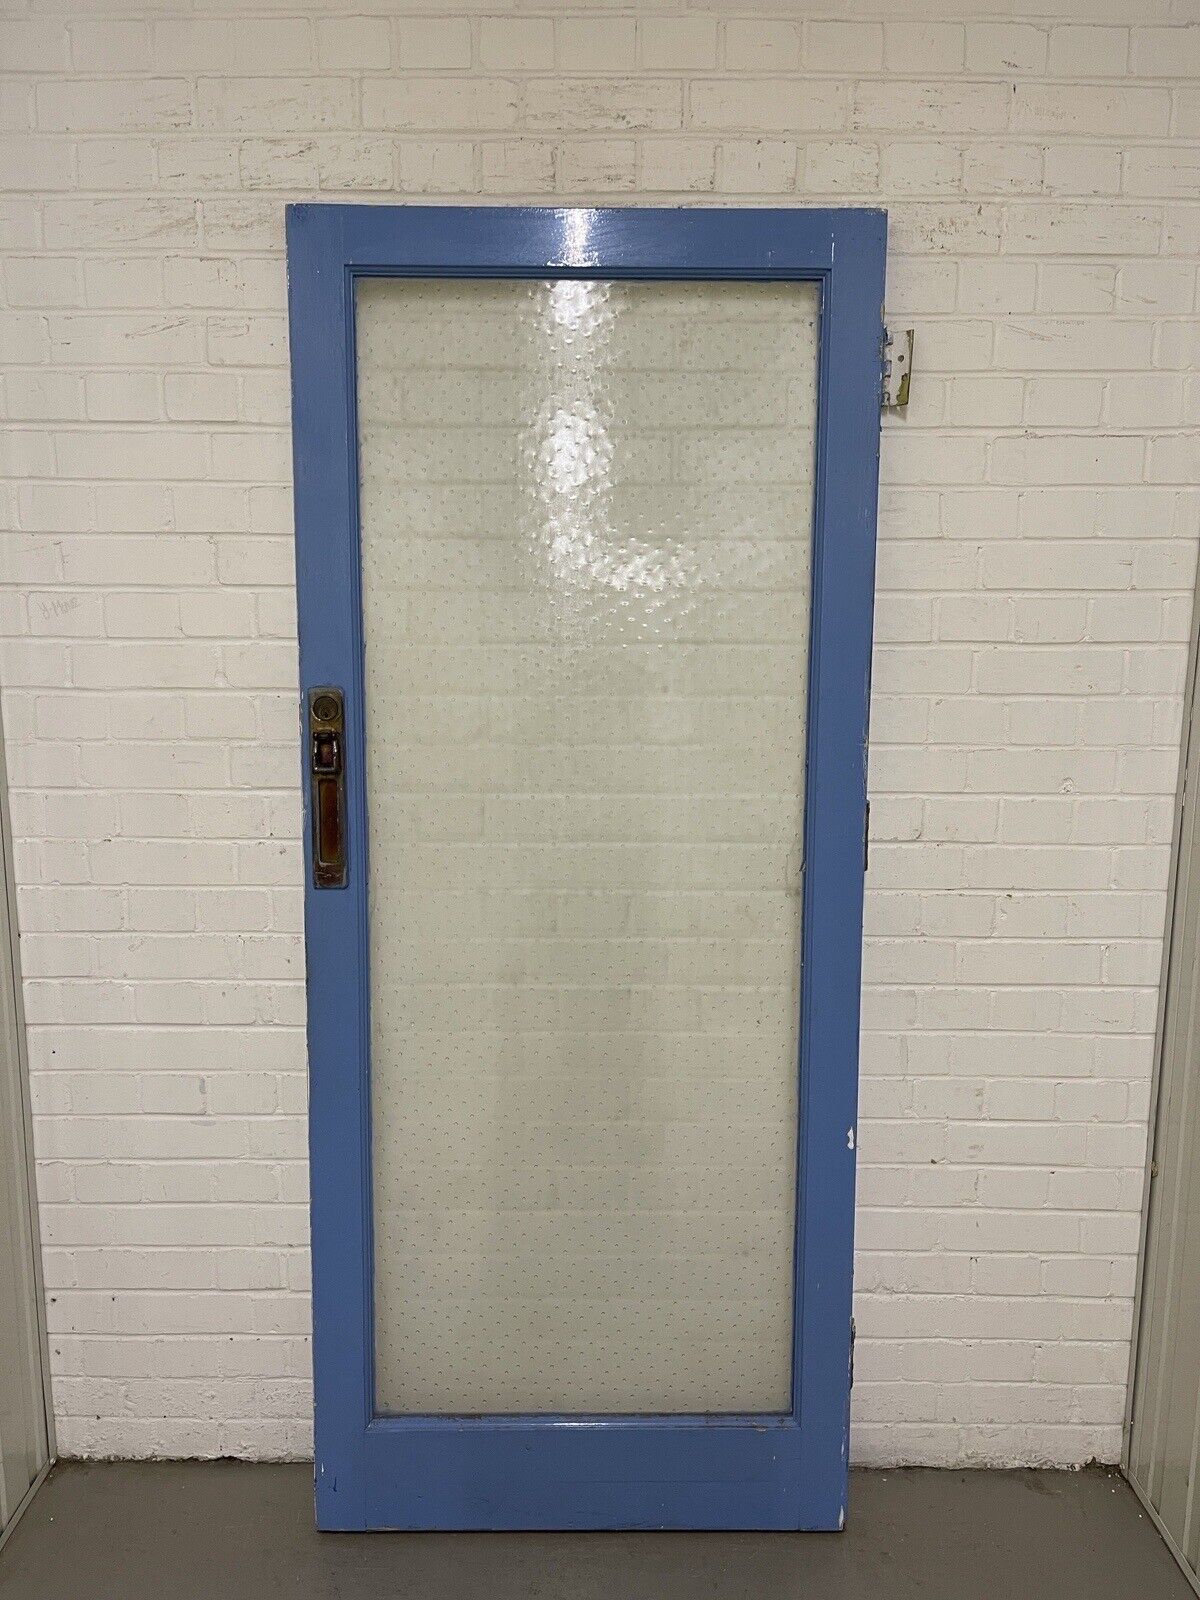 Reclaimed Polka Dot Raised 50s 60s 70s Glass External Door 1963 x 830mm